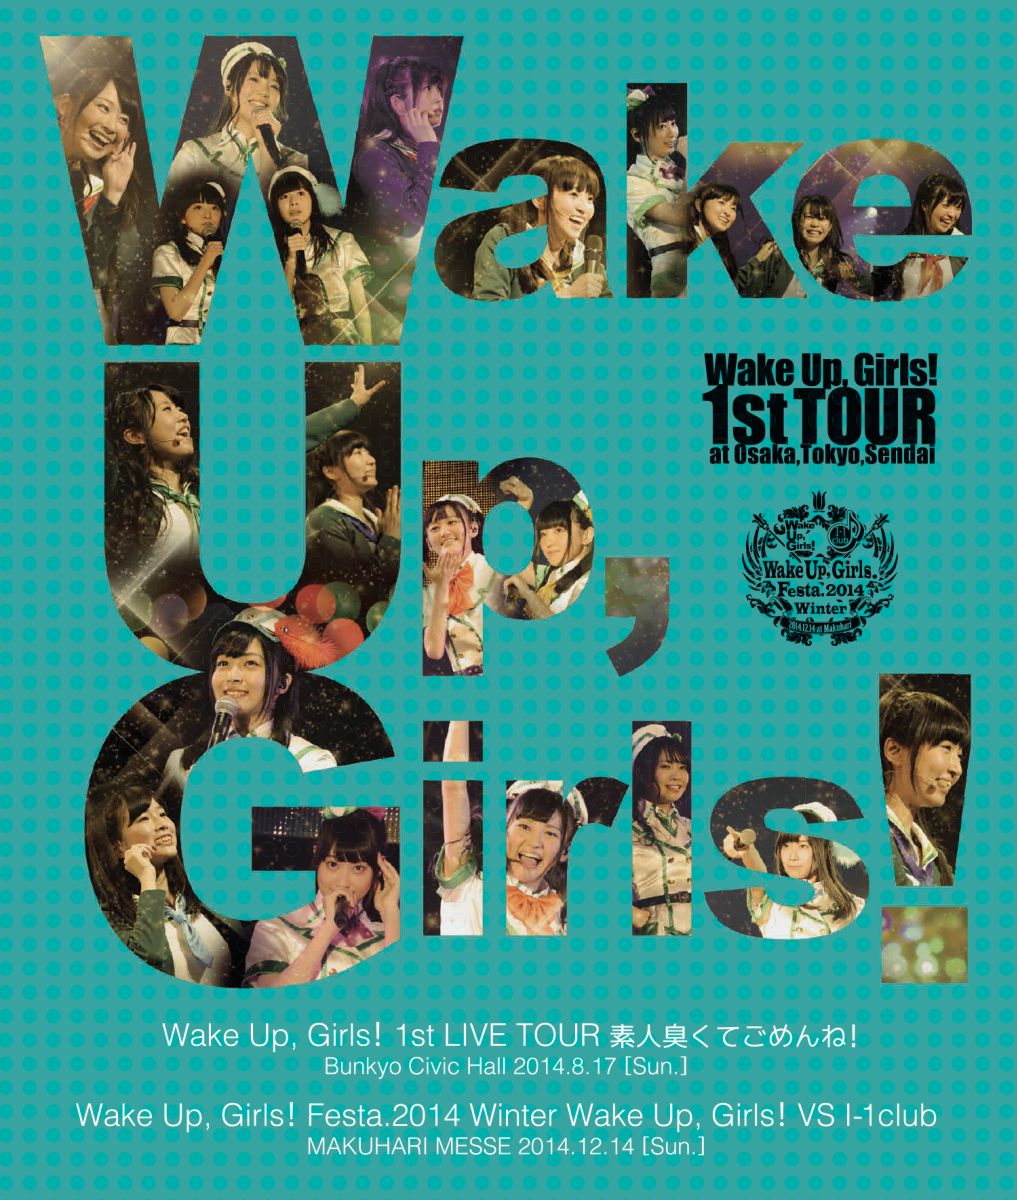 【特典なし】Wake Up, Girls! 1st LIVE TOUR 素人臭くてごめんね。/Wake Up, Girls!VS I-1club【Blu-ray】